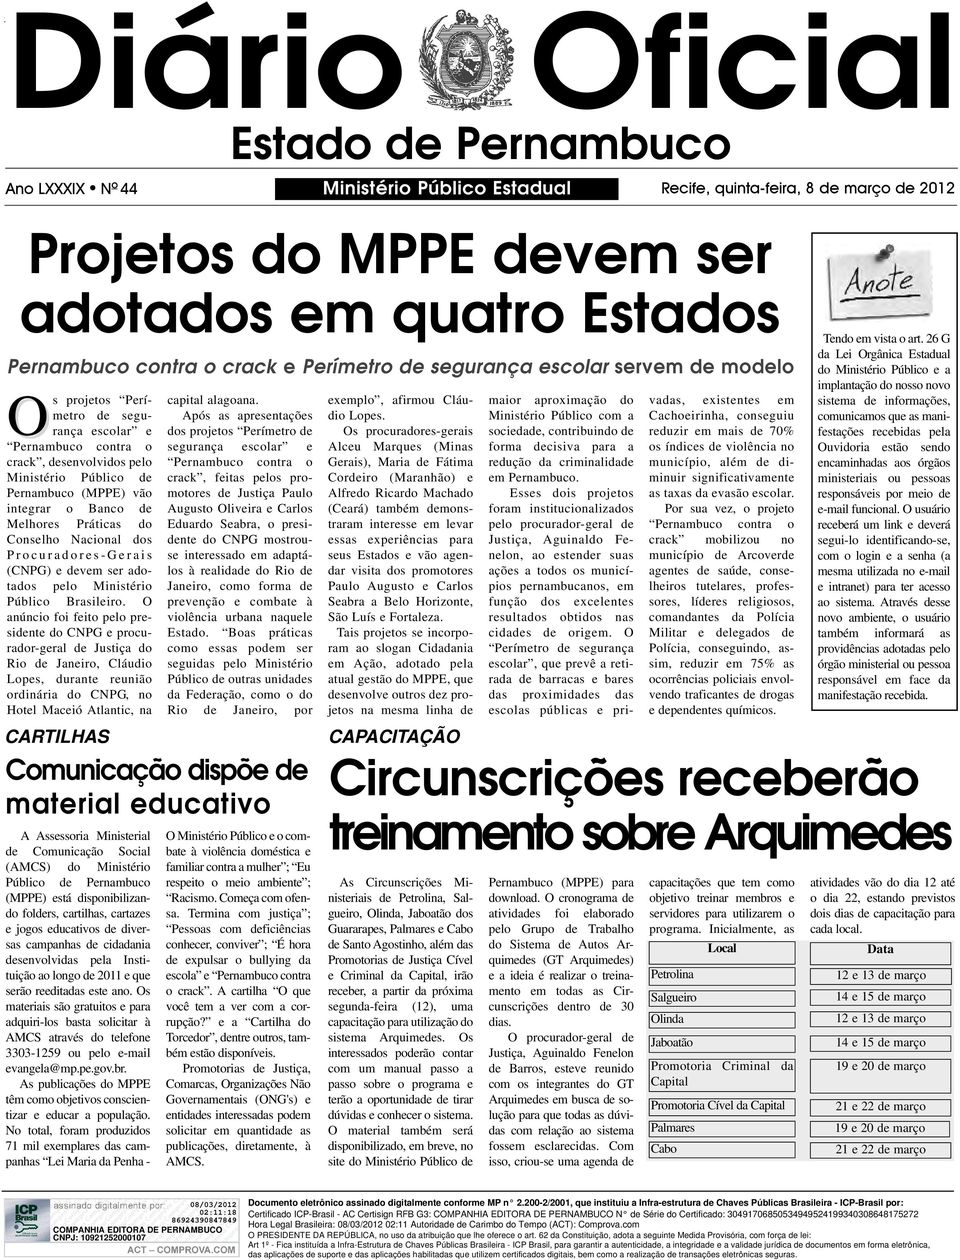 o Banco de Melhores Práticas do Conselho Nacional dos Procuradores-Gerais (CNPG) e devem ser adotados pelo Ministério Público Brasileiro.